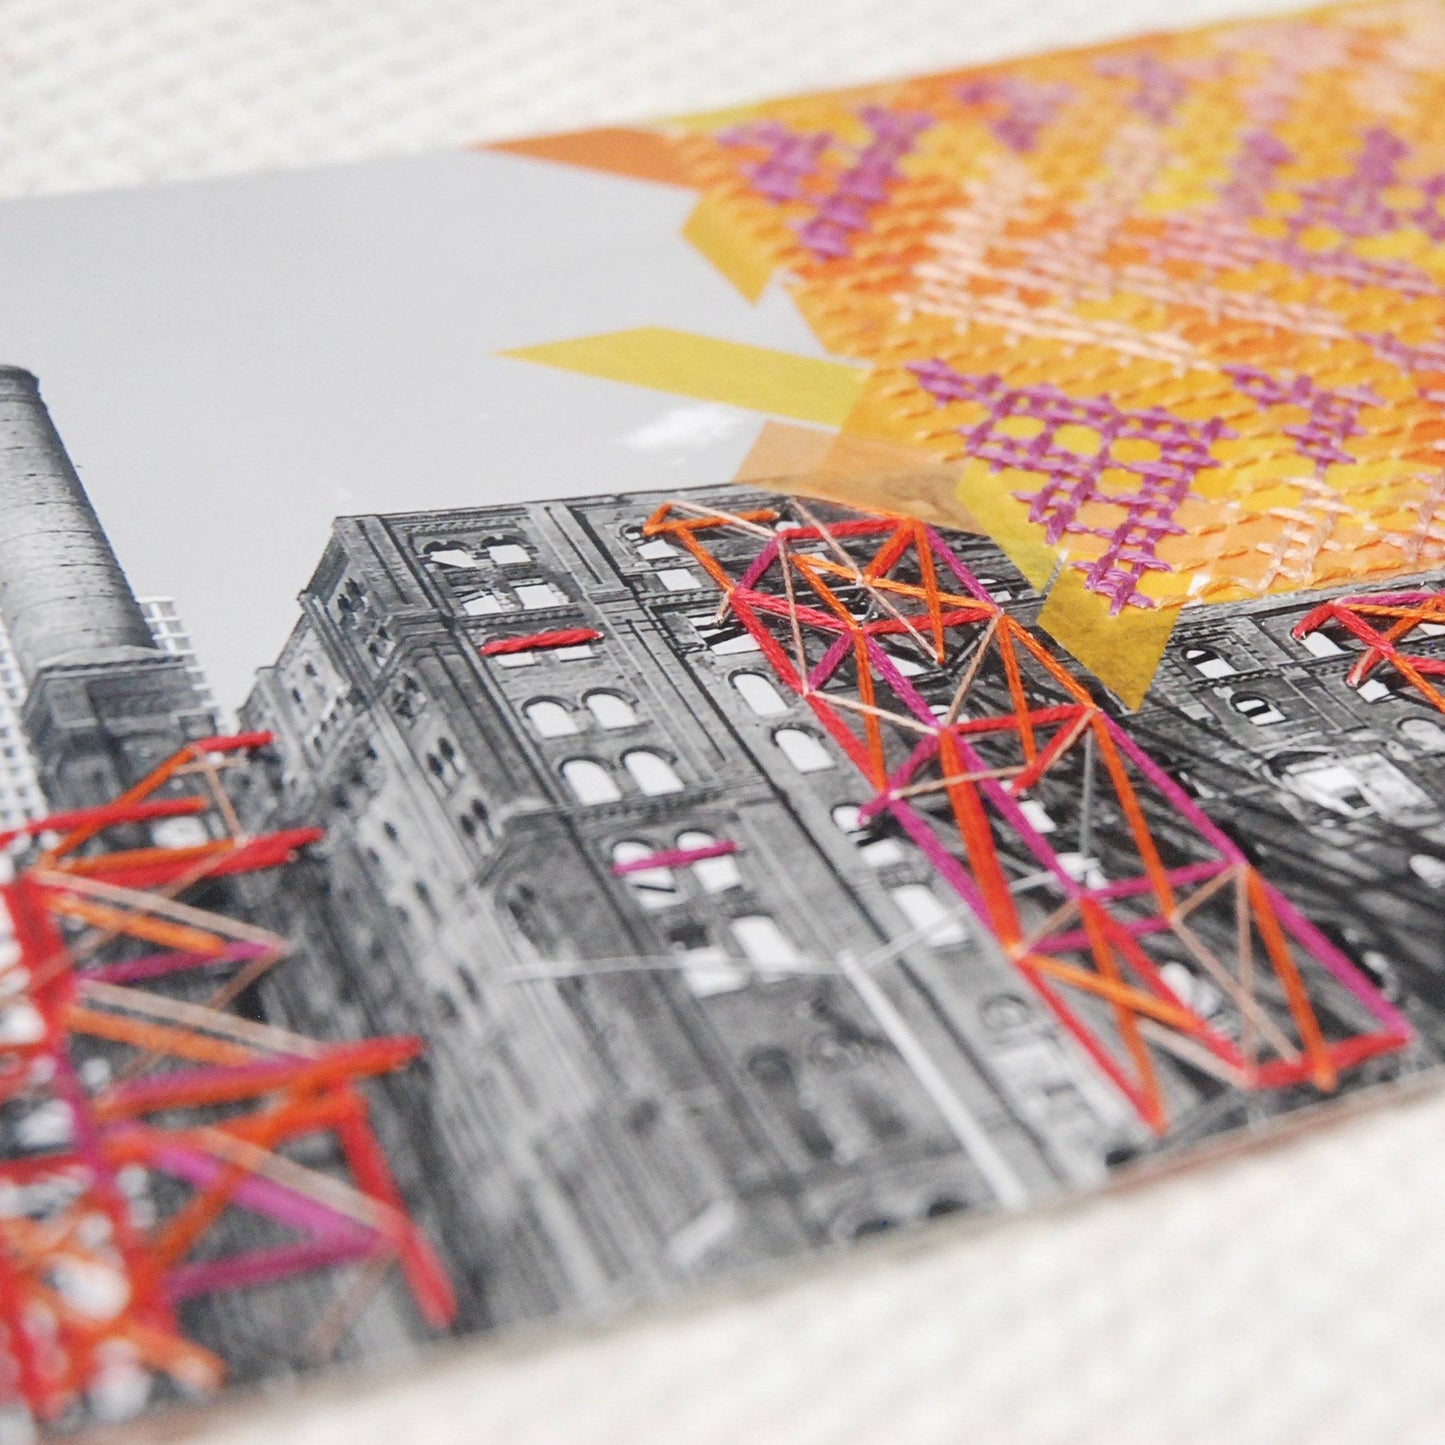 Domino + Dominoes: NYC Travel embroidery art - Catalina Escallon